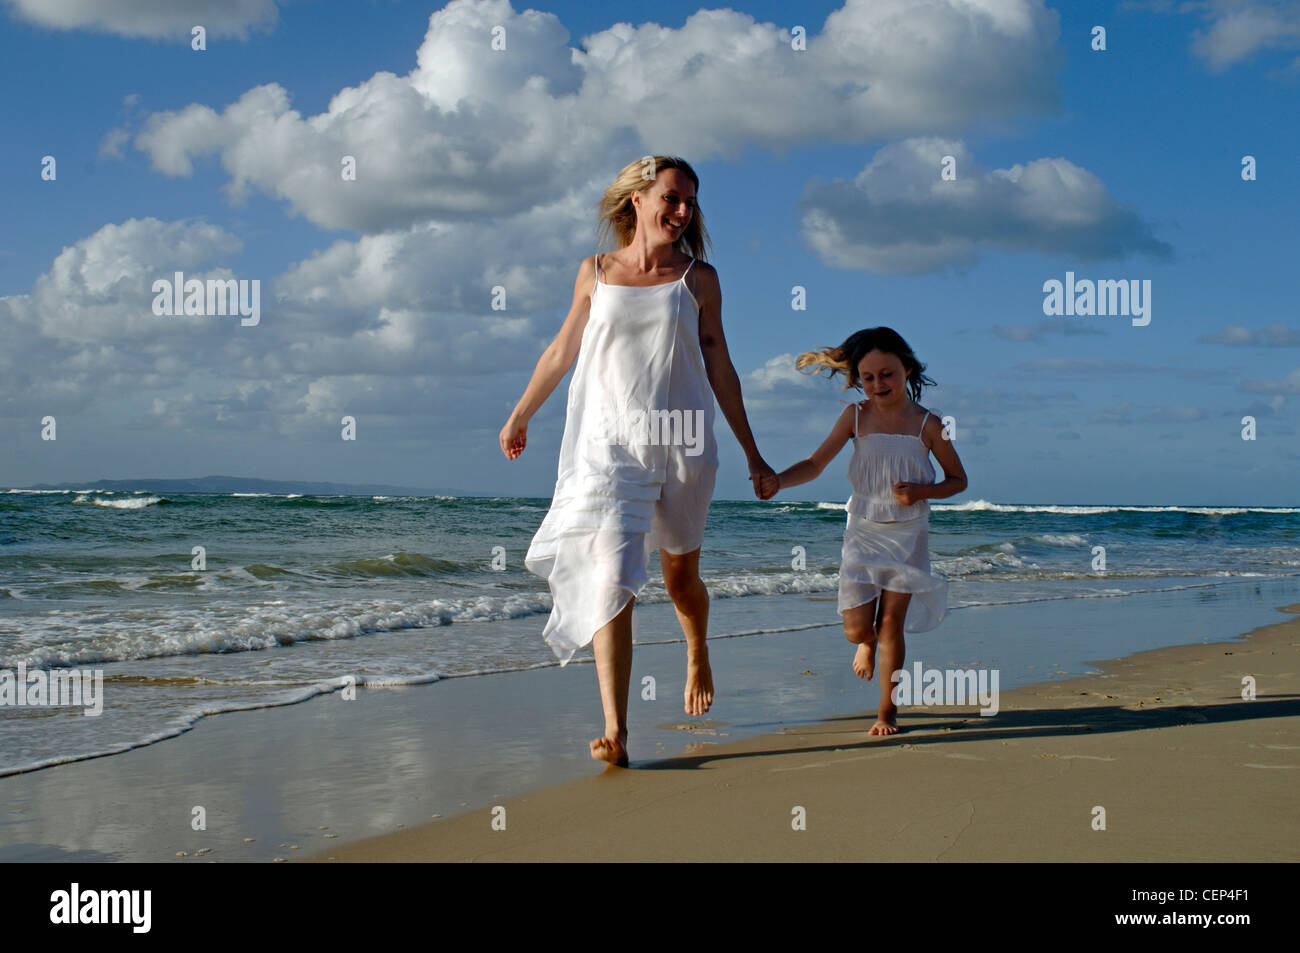 Madre e hija luciendo vestidos blancos en una playa que corre a lo largo de manos Fotografía de - Alamy